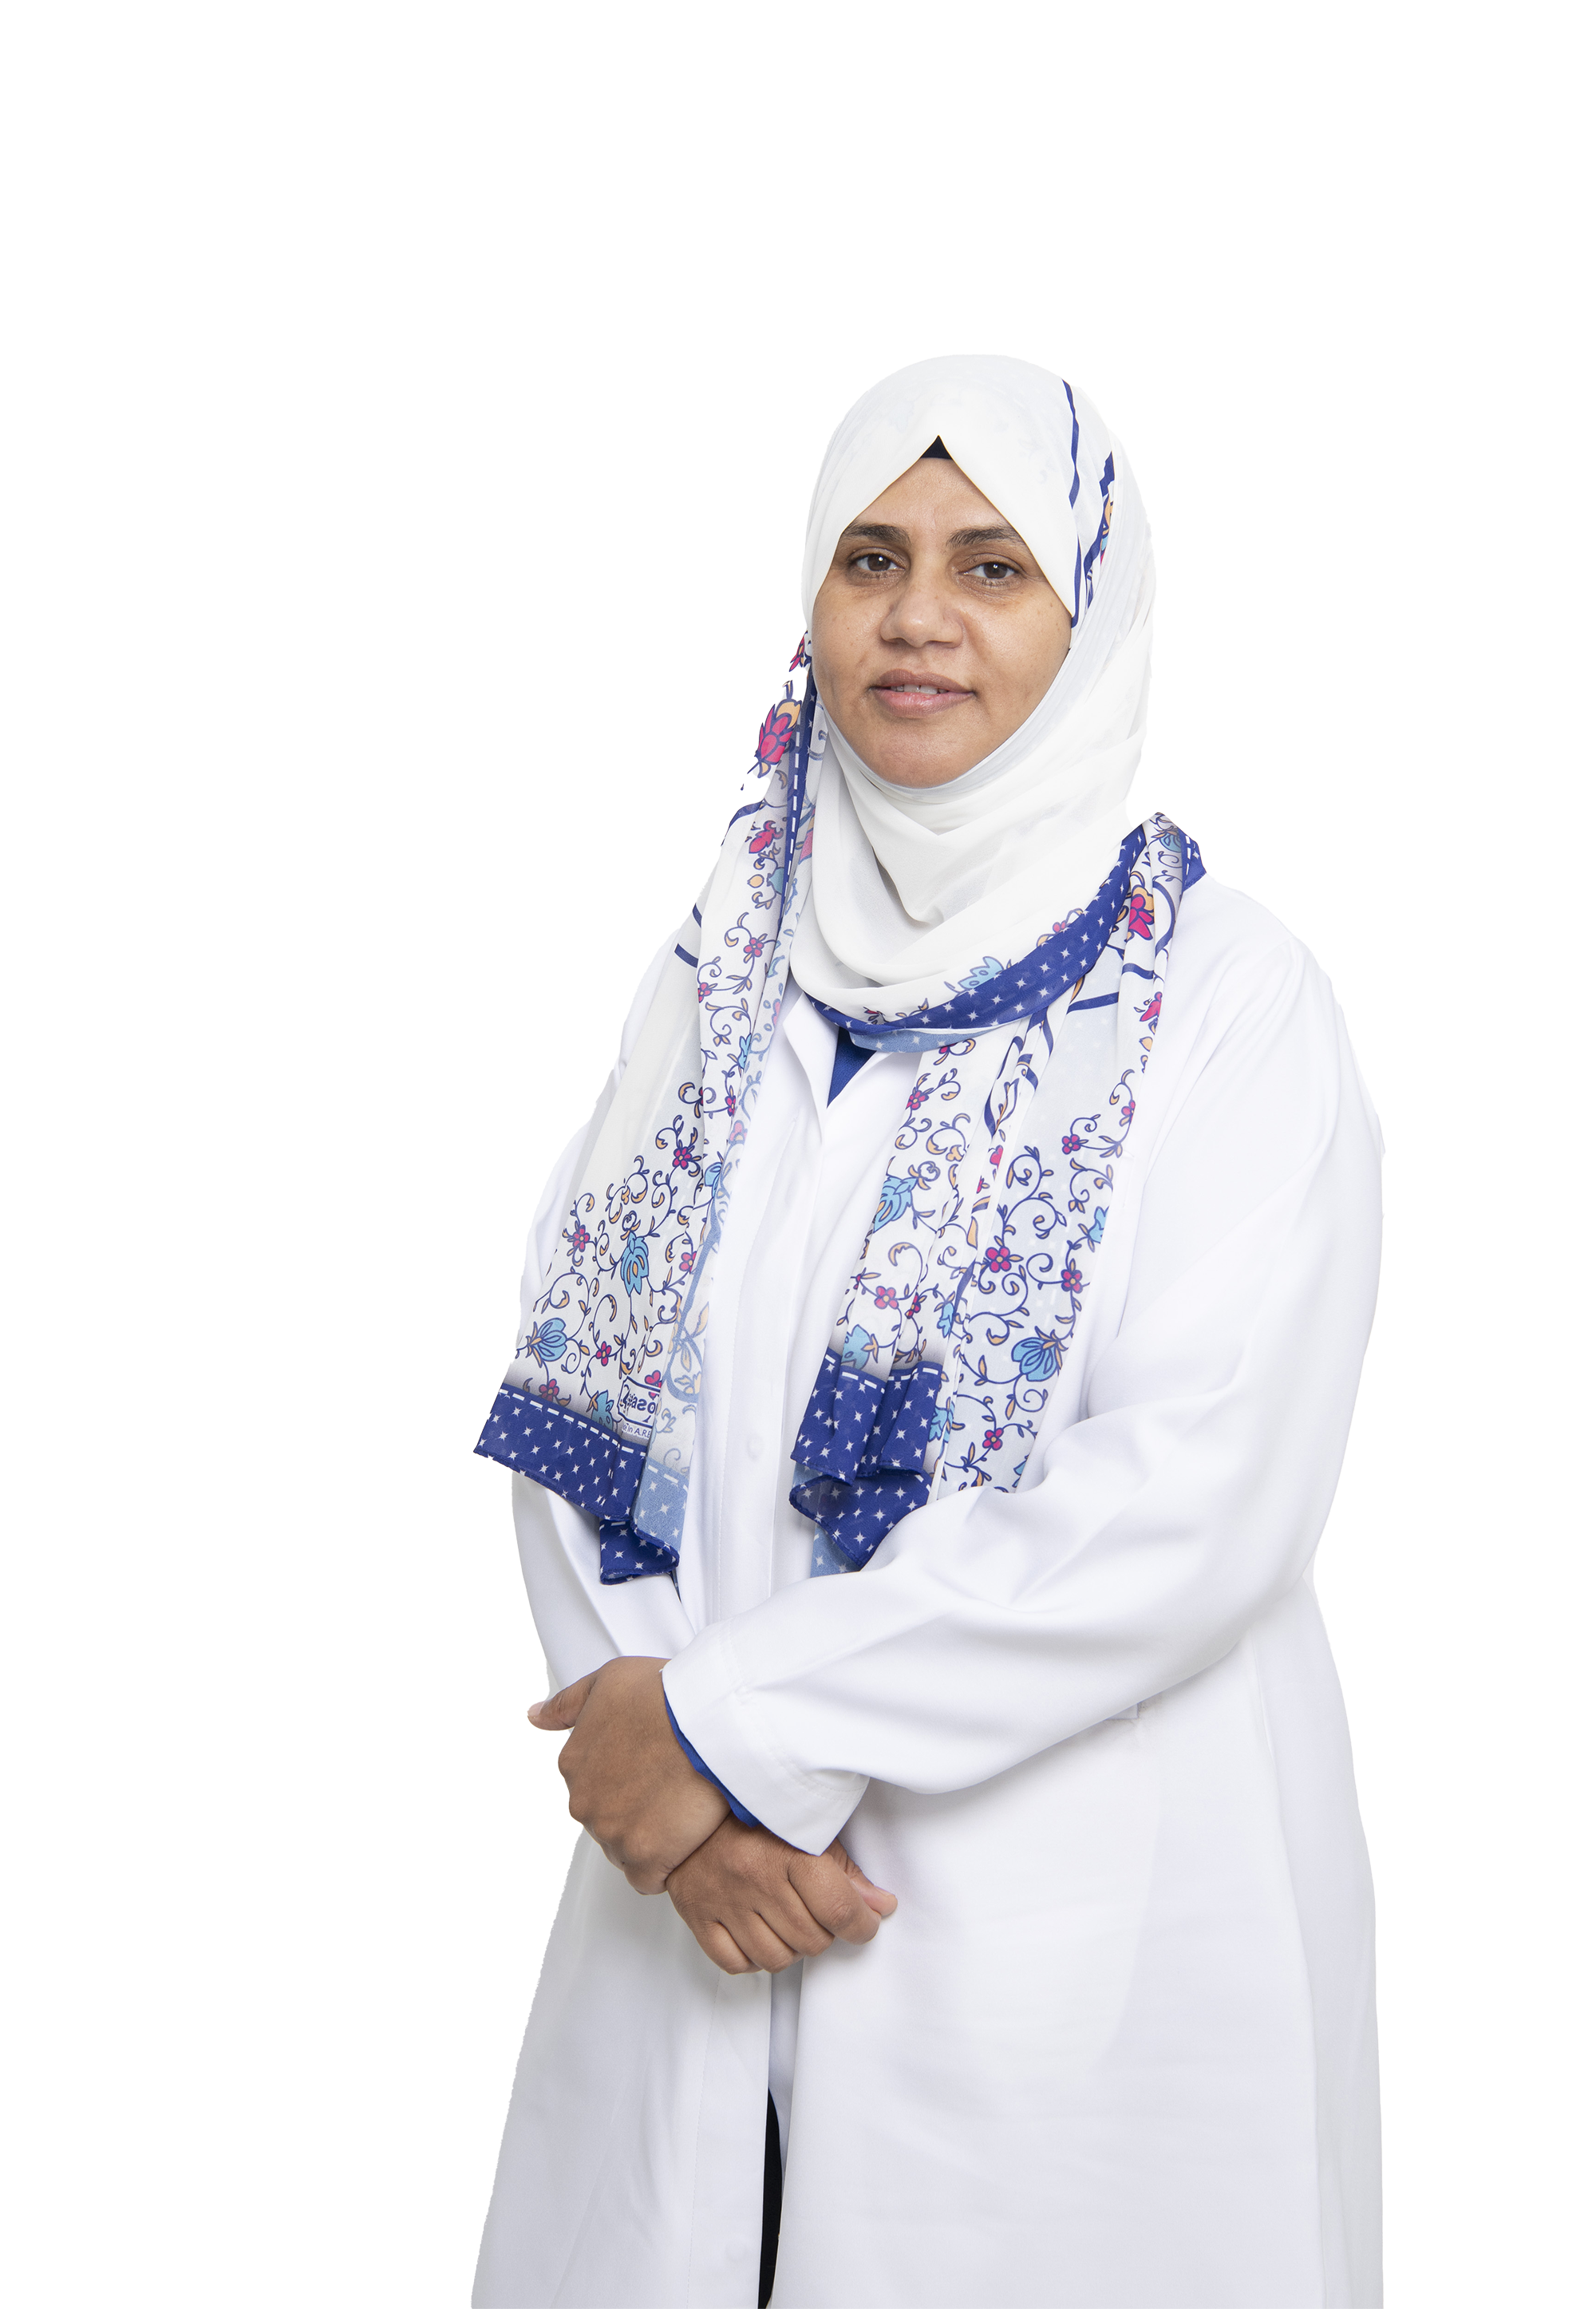 Dr. Fatma Ahmed